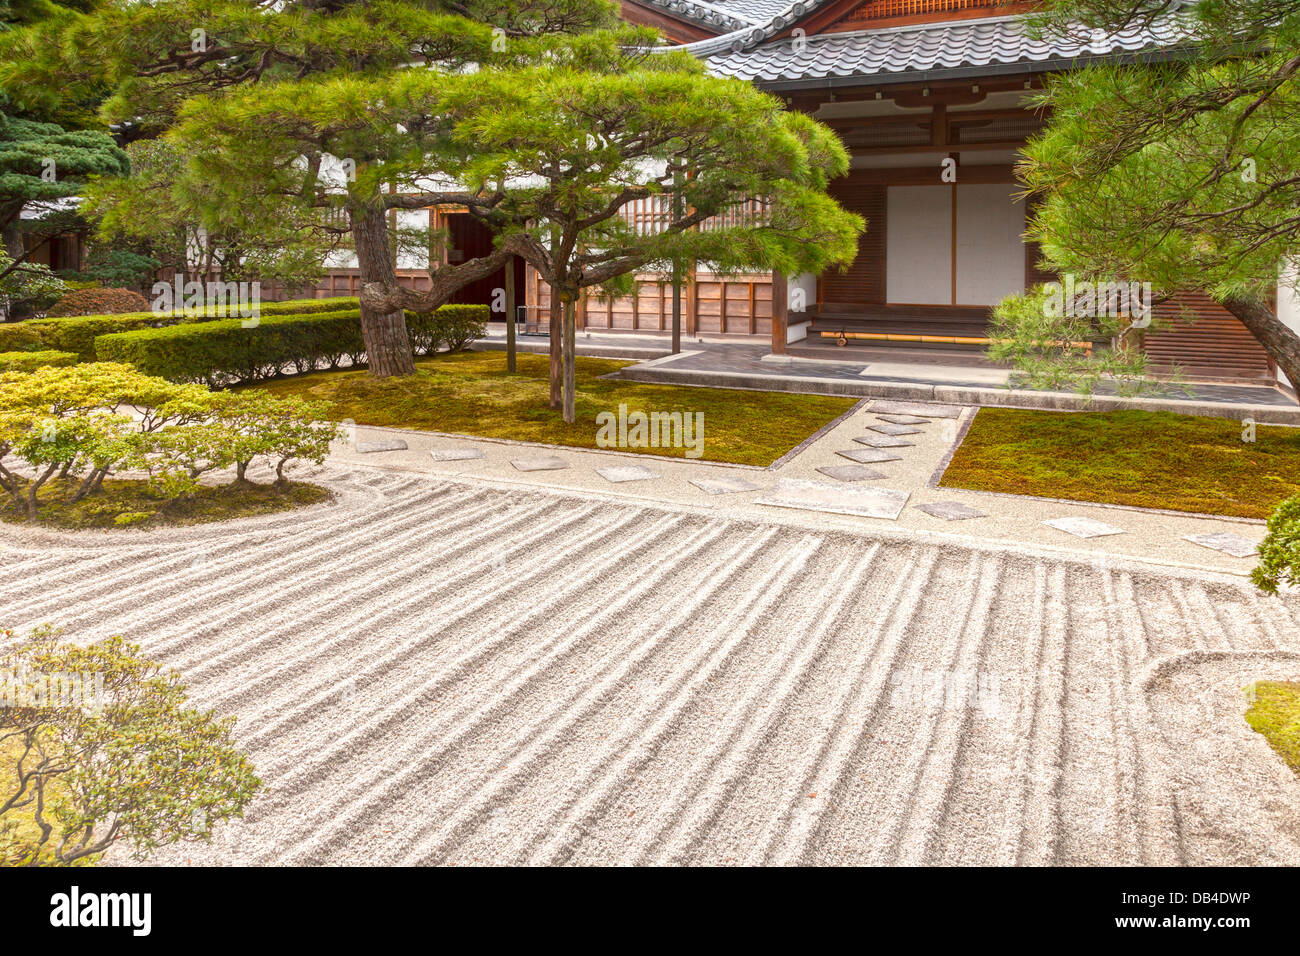 Teil des Gartens des Ginkaku-Ji Tempel oder Jisho-Ji in Kyoto, im Herbst zu sehen. Dieser Zen-buddhistischen Tempel ist eine bemerkenswerte... Stockfoto